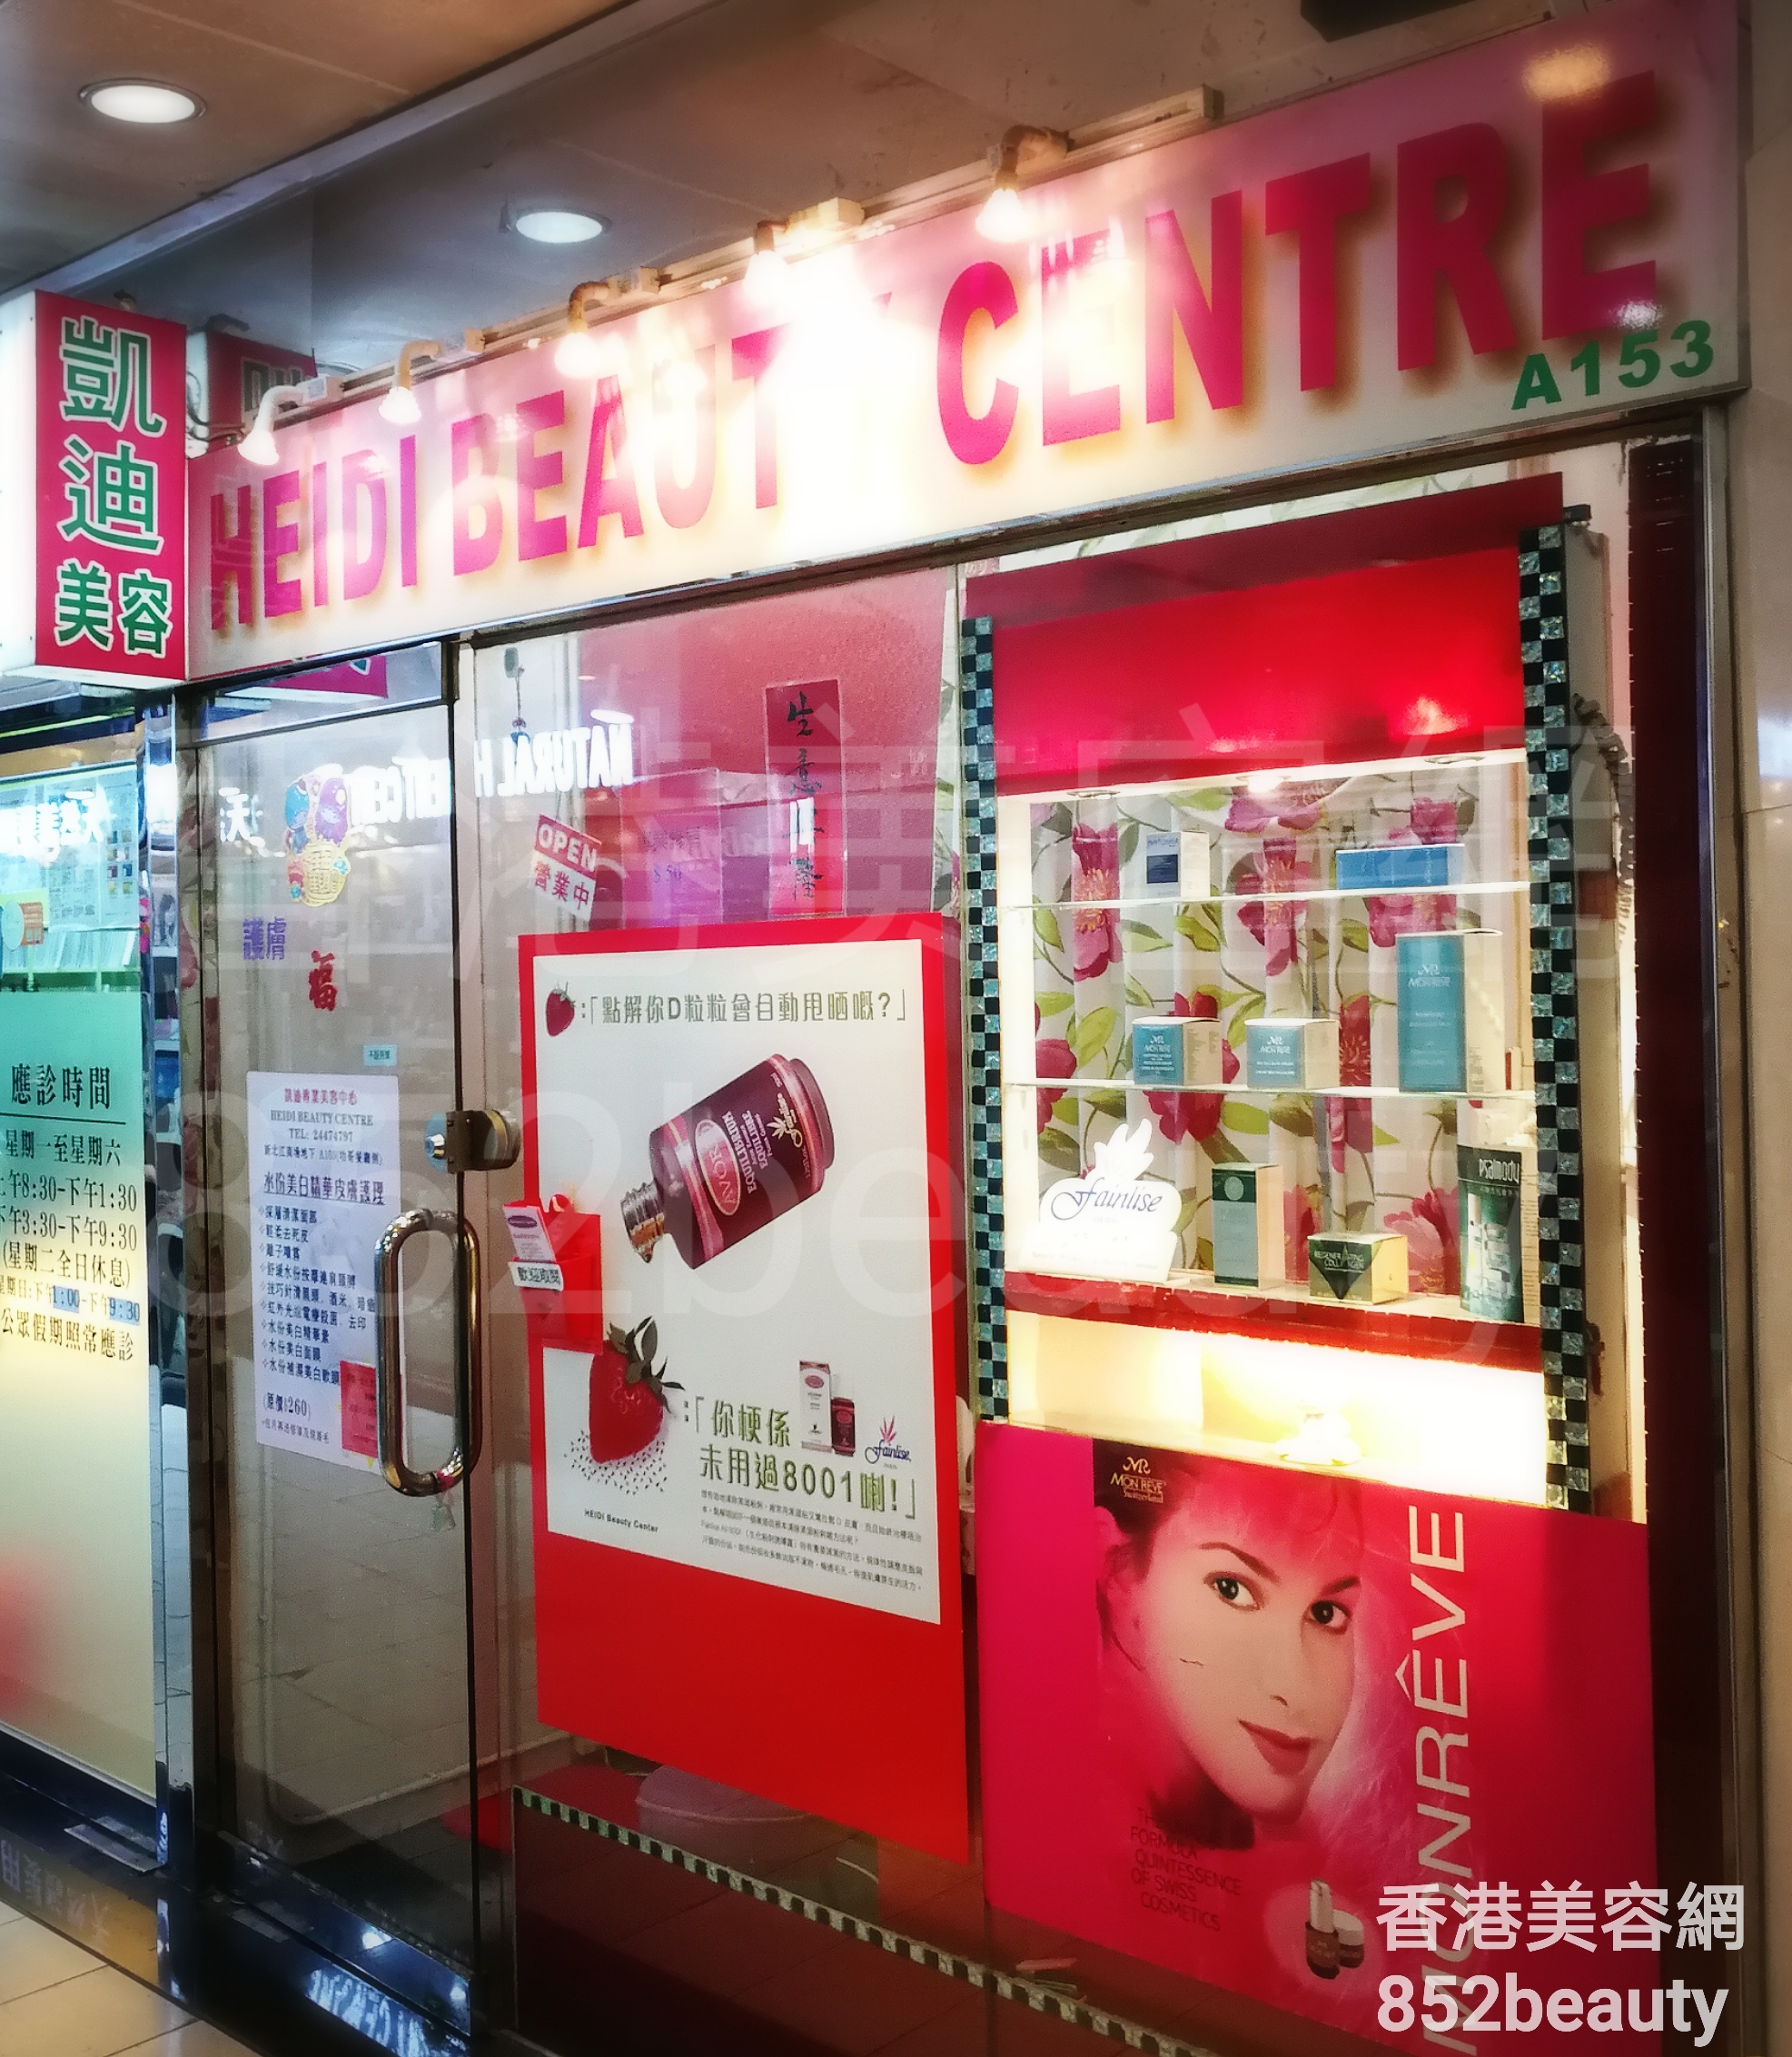 香港美容網 Hong Kong Beauty Salon 美容院 / 美容師: 凱迪美容 HEIDI BEAUTY CENTRE